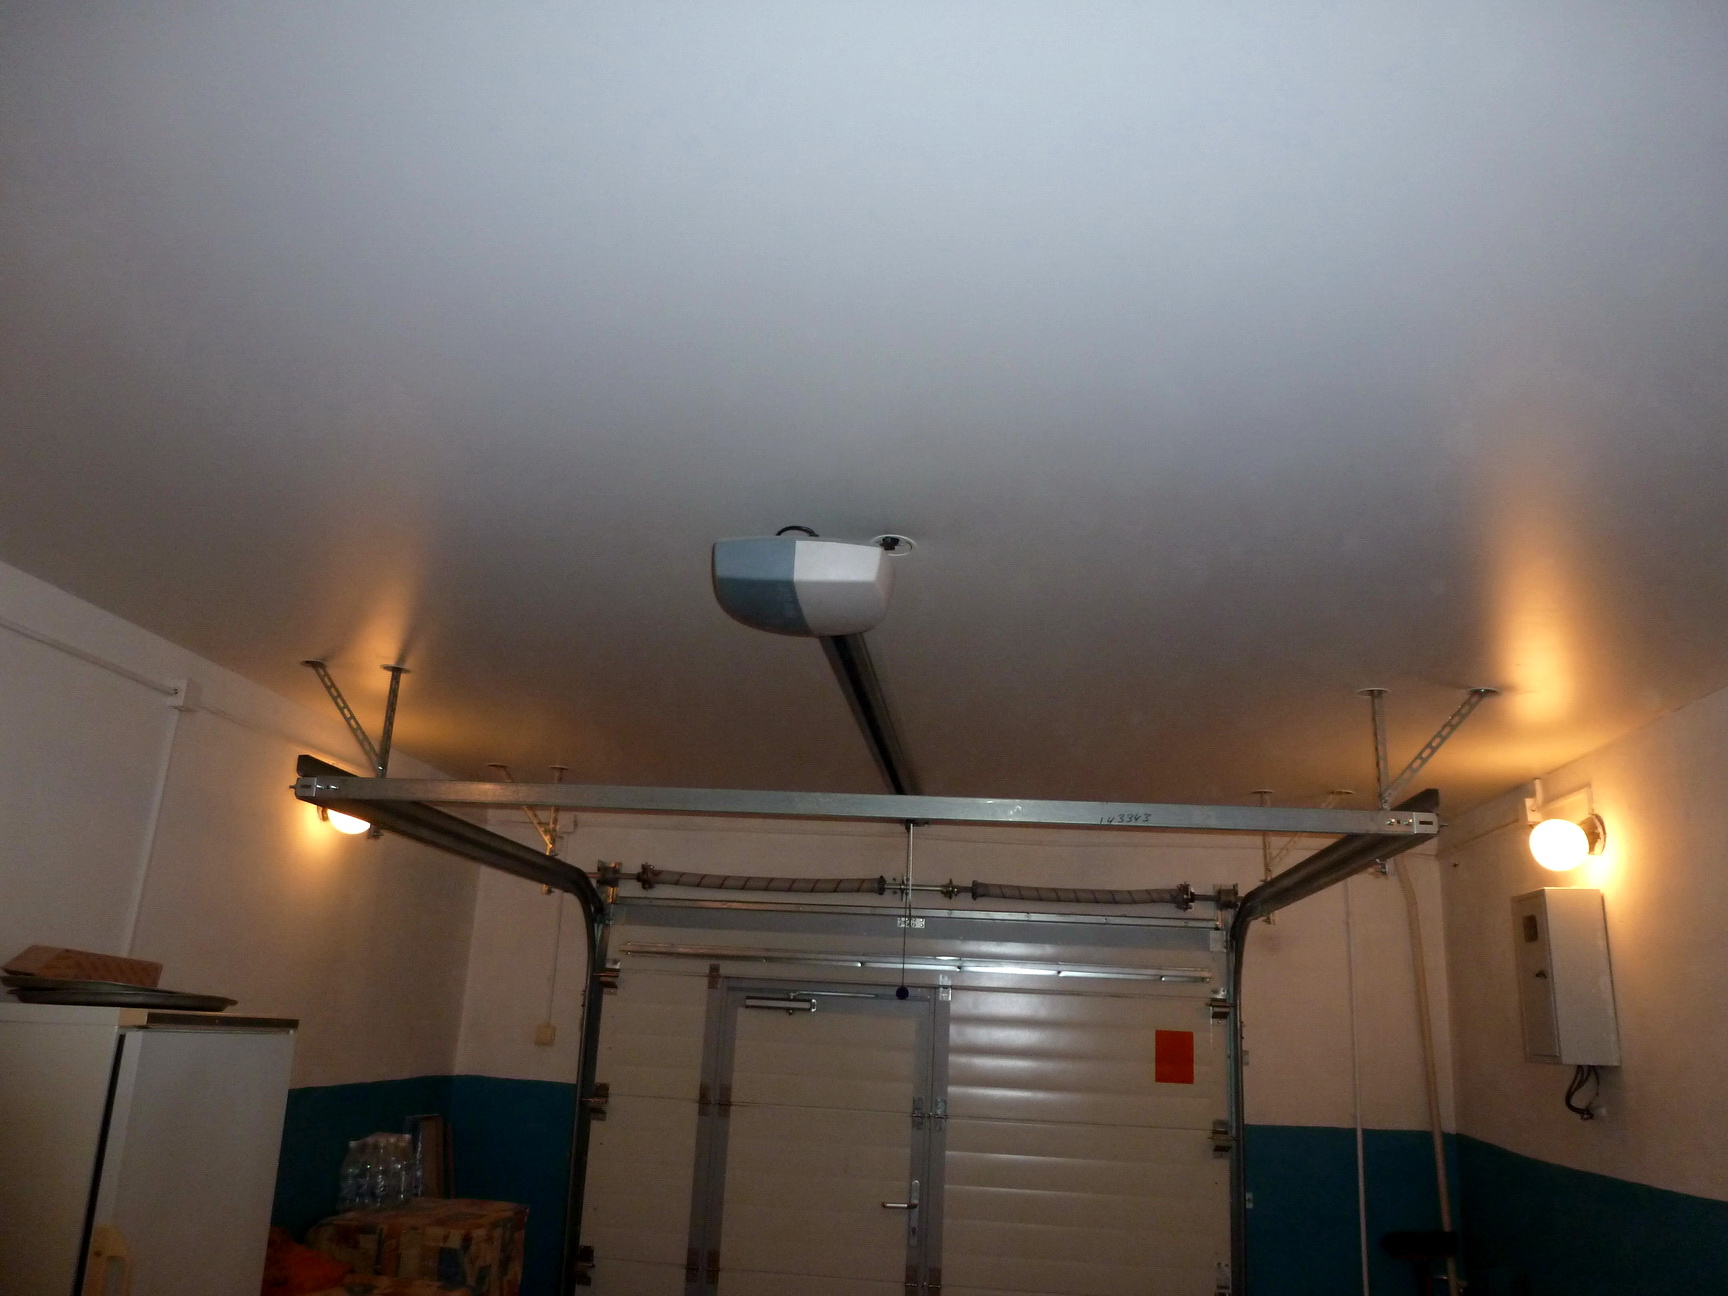 Как сделать качественный потолок в своем гараже